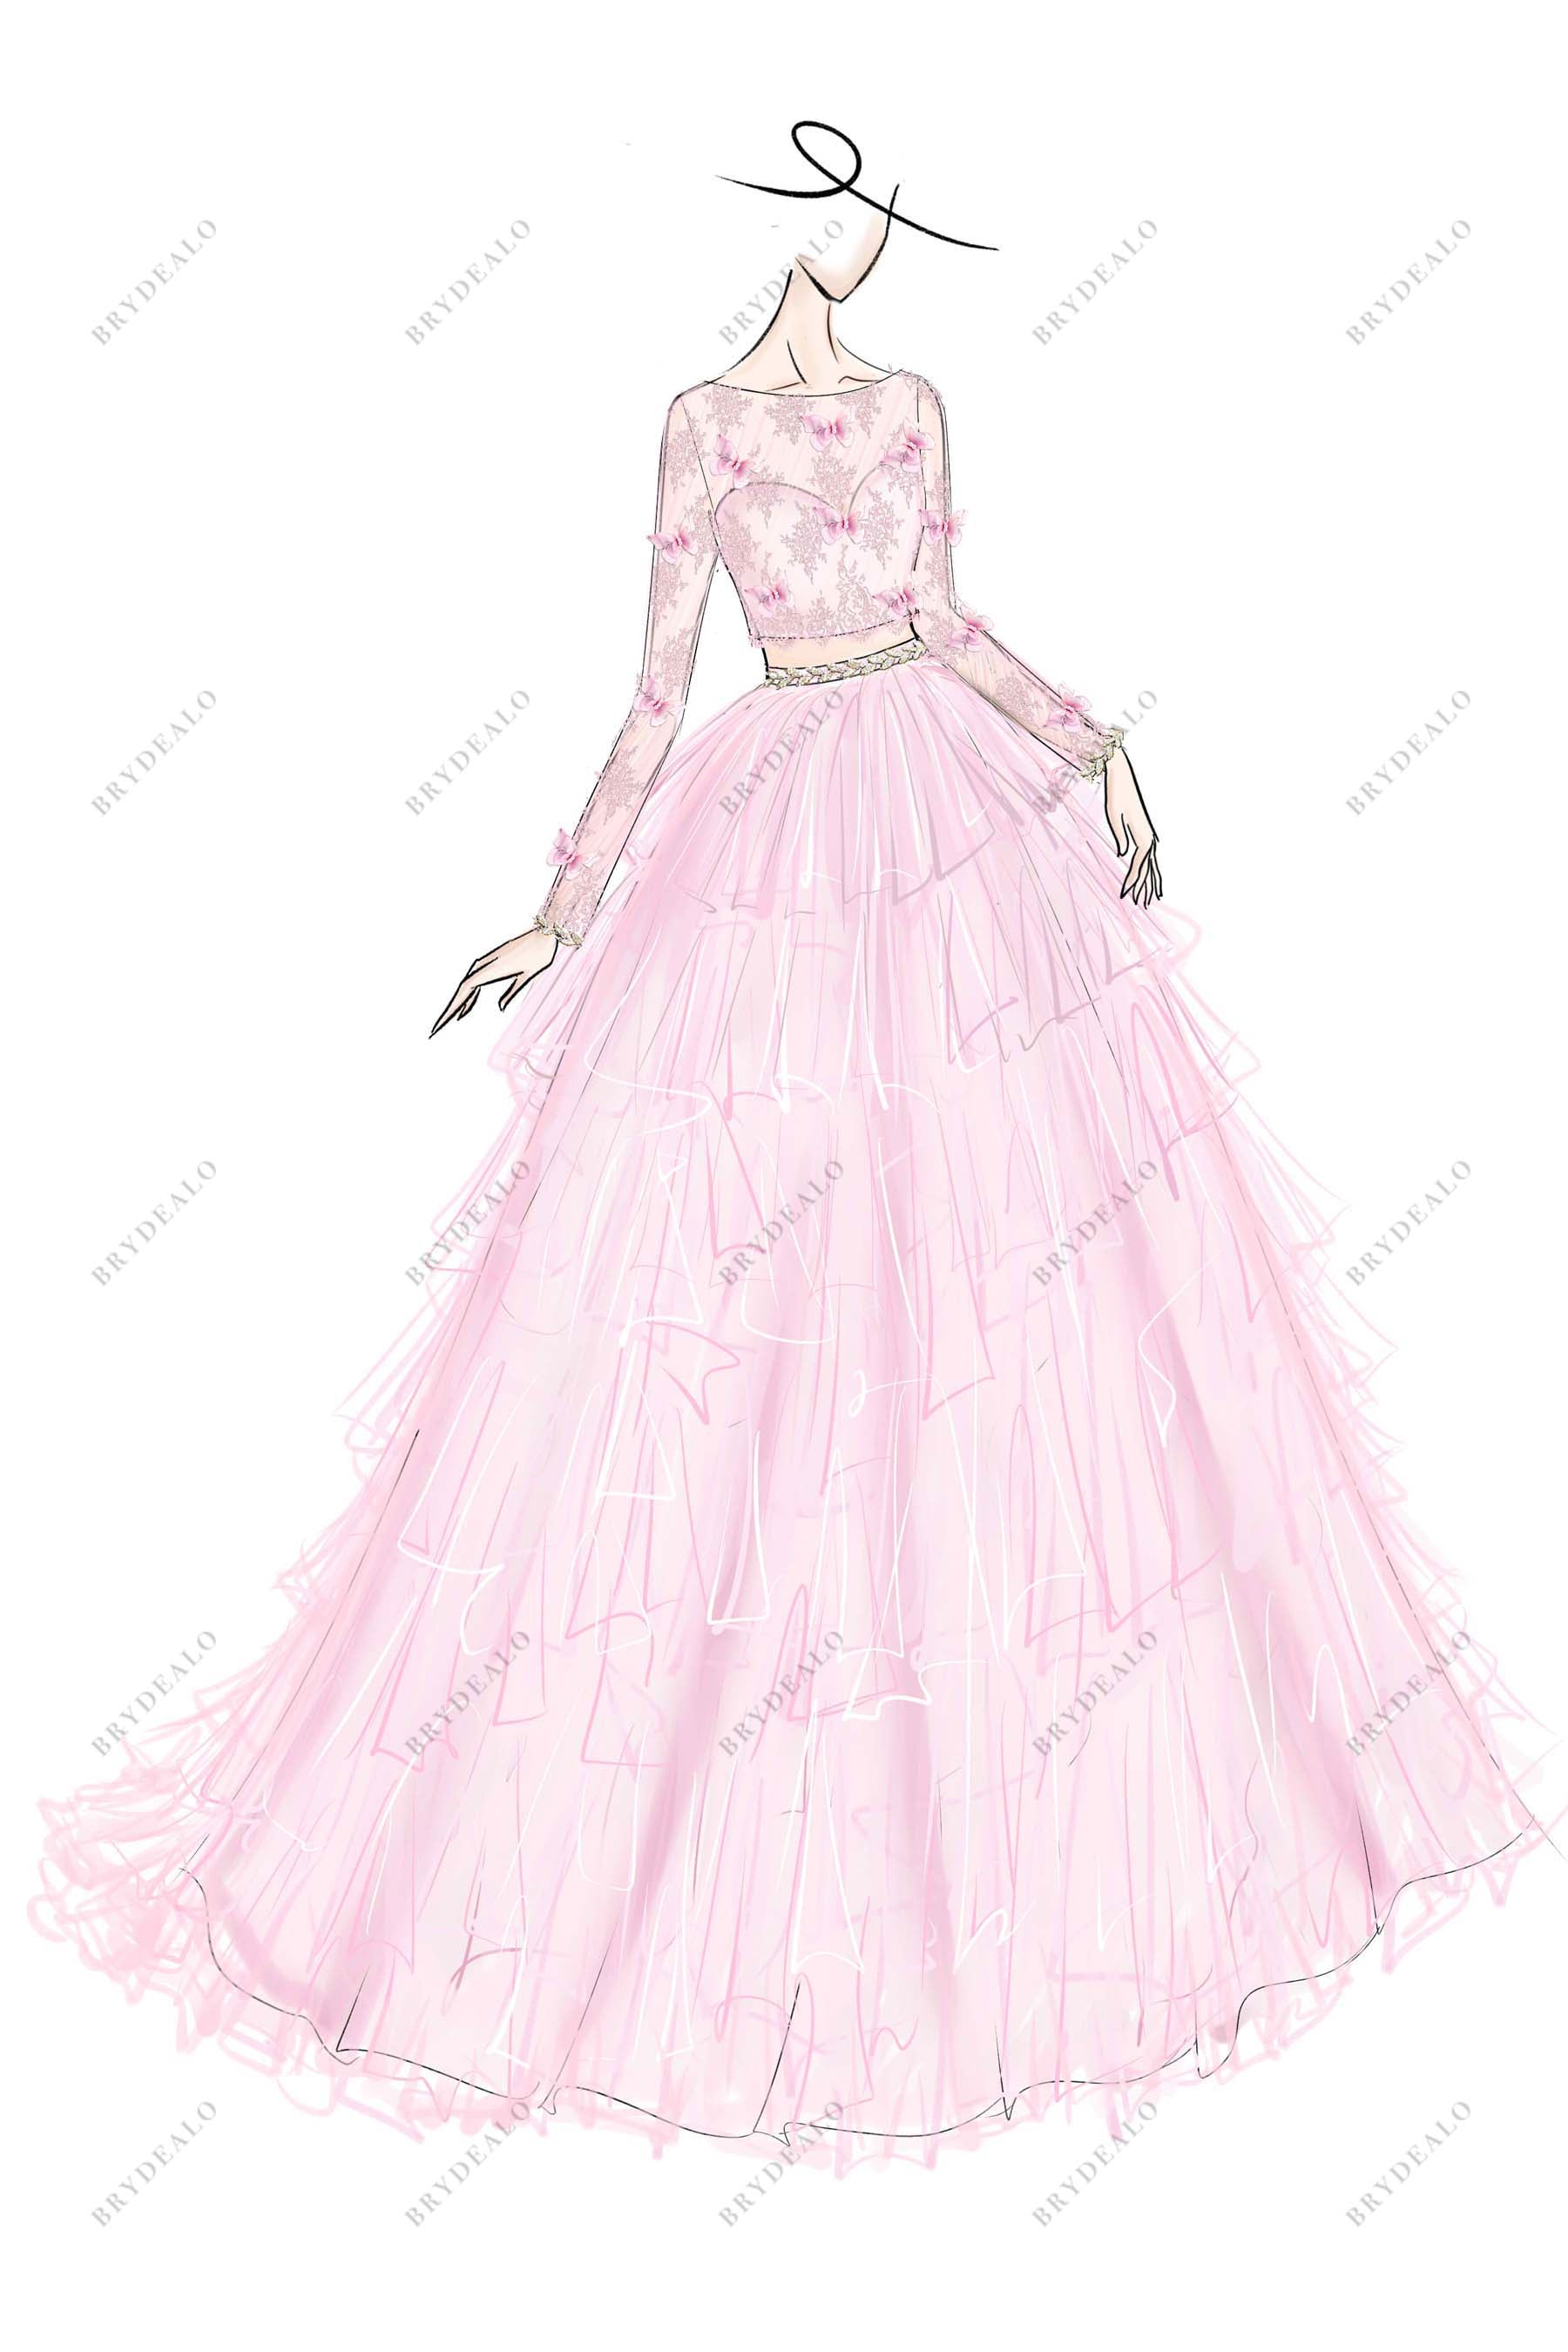 designer pink A-line lace wedding dress sketch